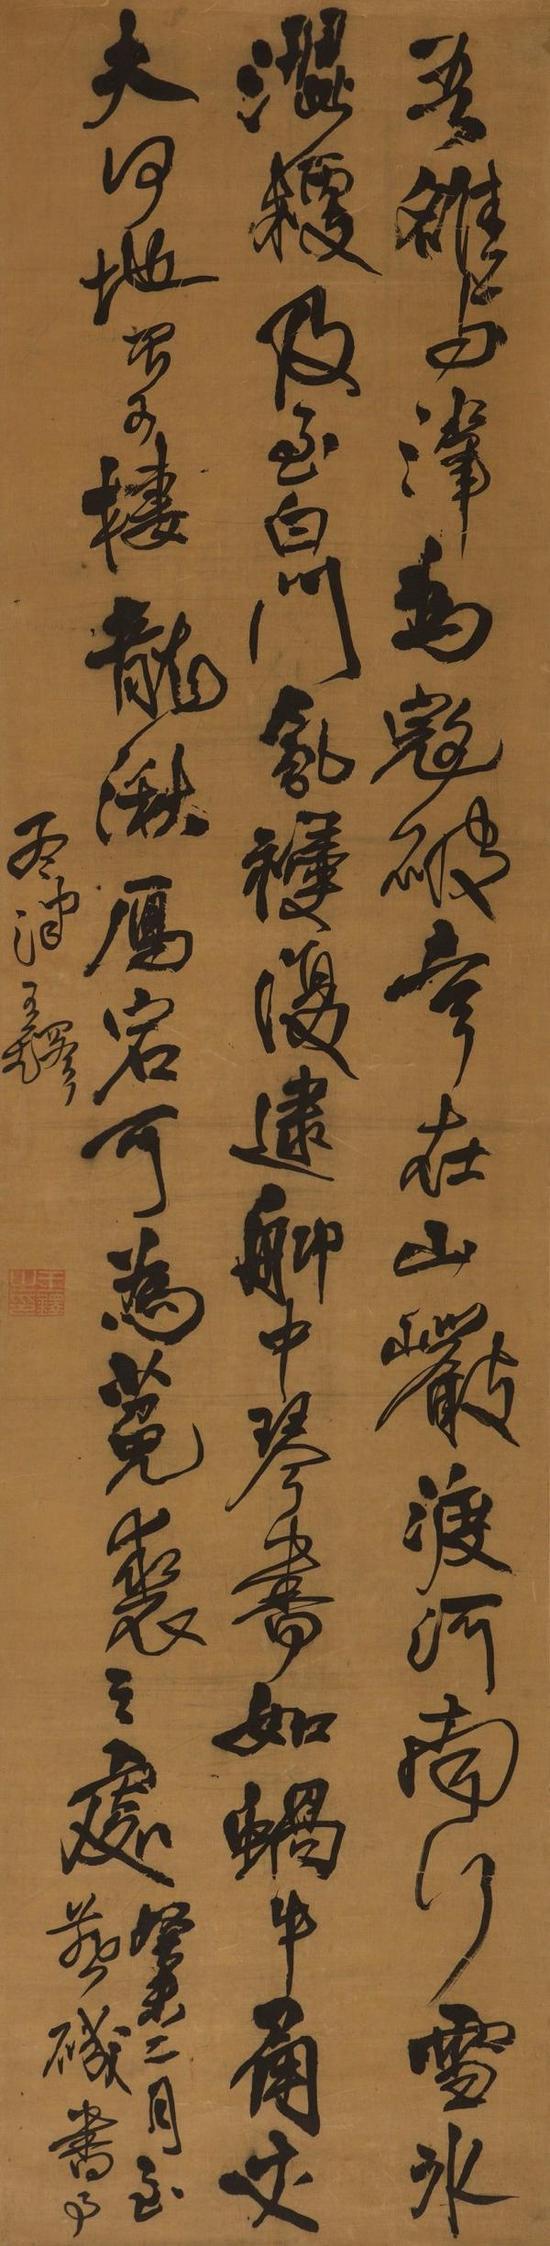 王铎 自作诗《吾洛与津为寇破》  224cm×50cm  1643年  广东省博物馆藏